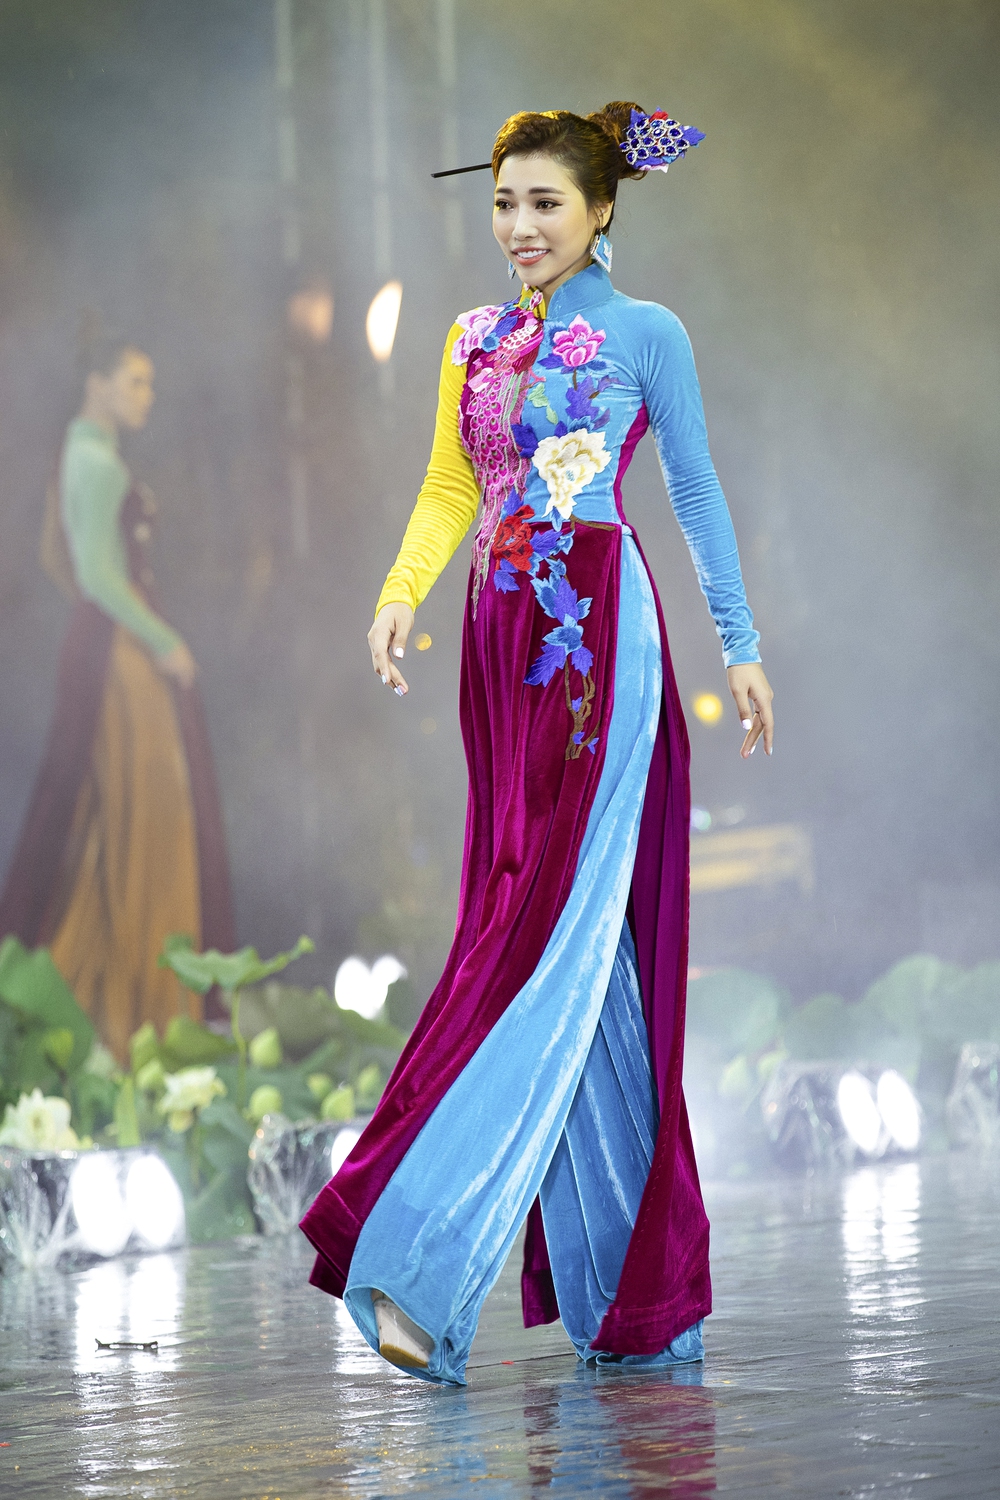 Á hậu Lý Kim Thảo xuất hiện xinh đẹp, diễn mở màn cho BST của NTK Nhật Dũng - Ảnh 6.